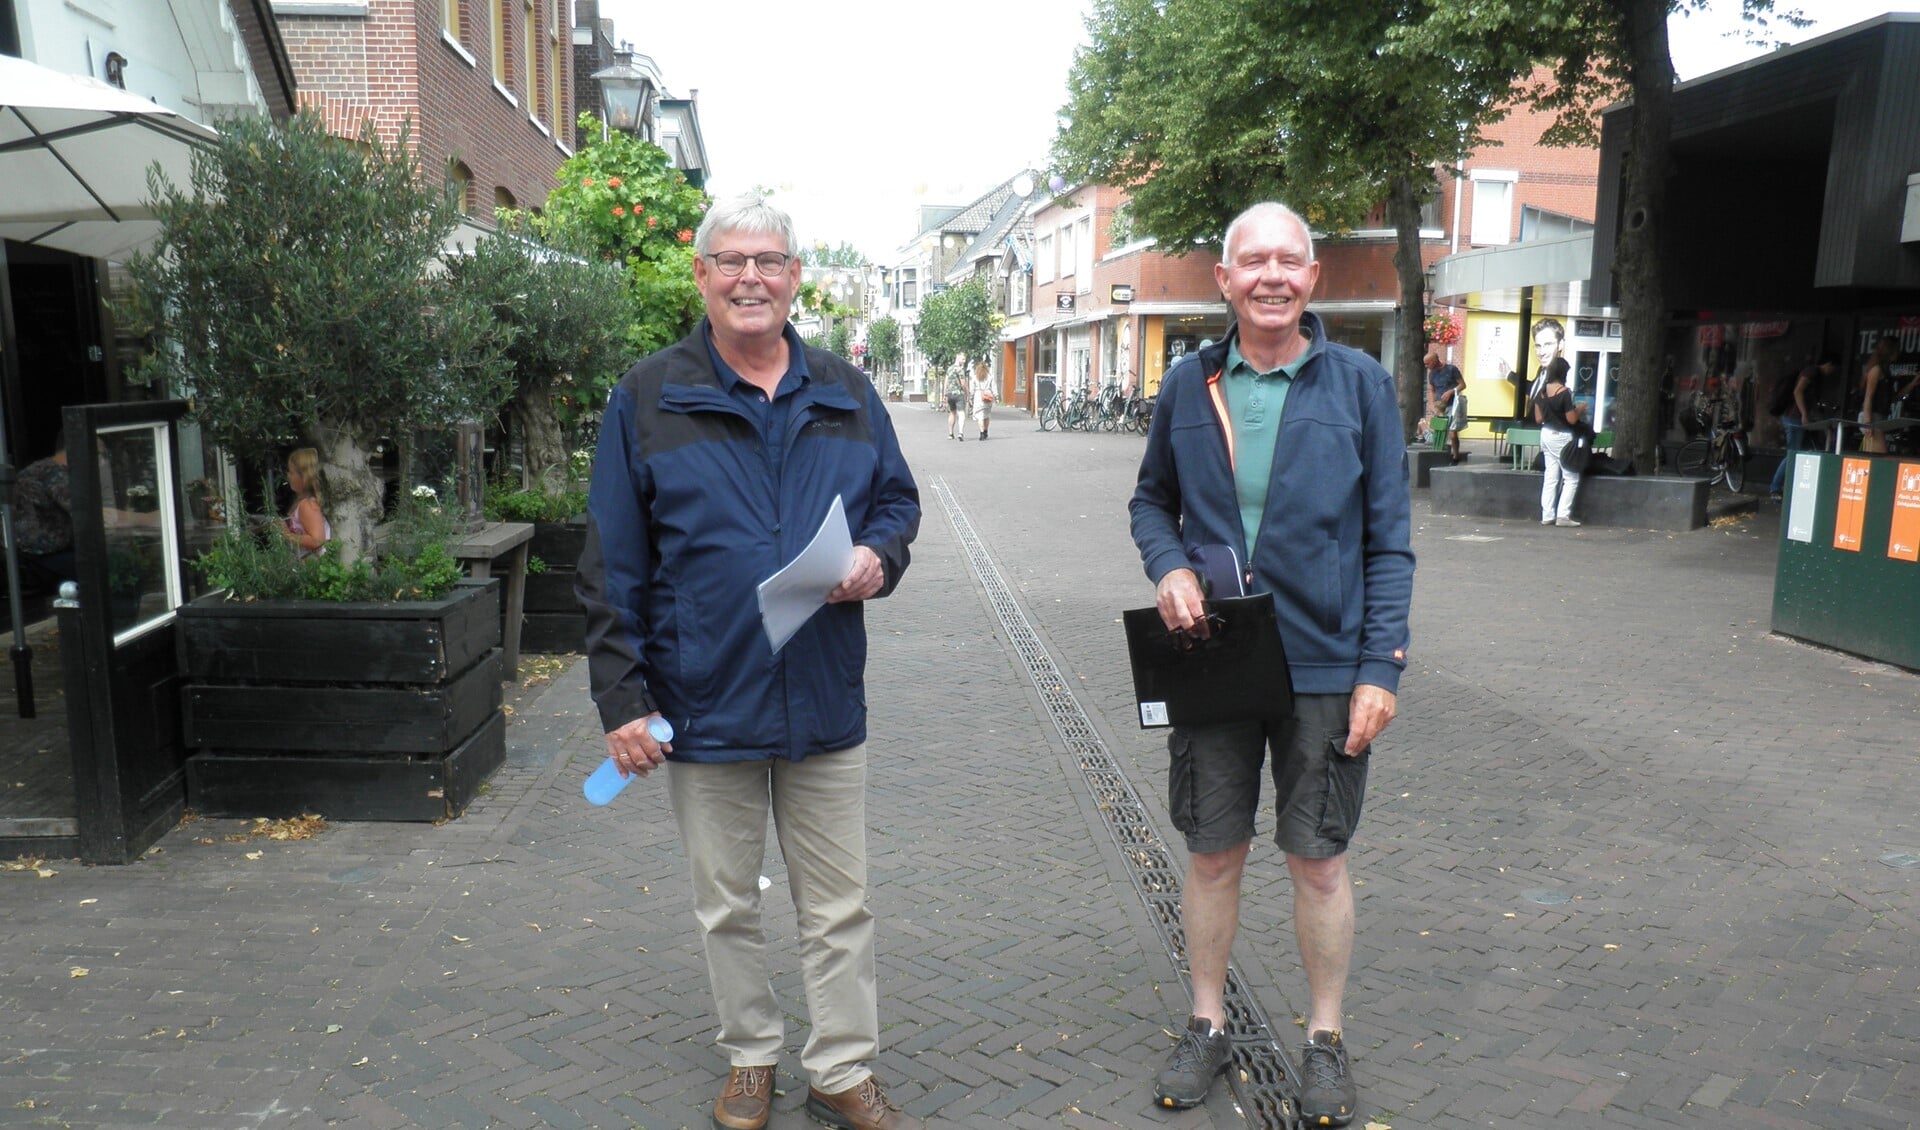 Stadsgidsen Edward ten Hooven (links) en Kees Doodeman nabij het vertrekpunt in de Dorpsstraat. Foto Kees van Rongen 